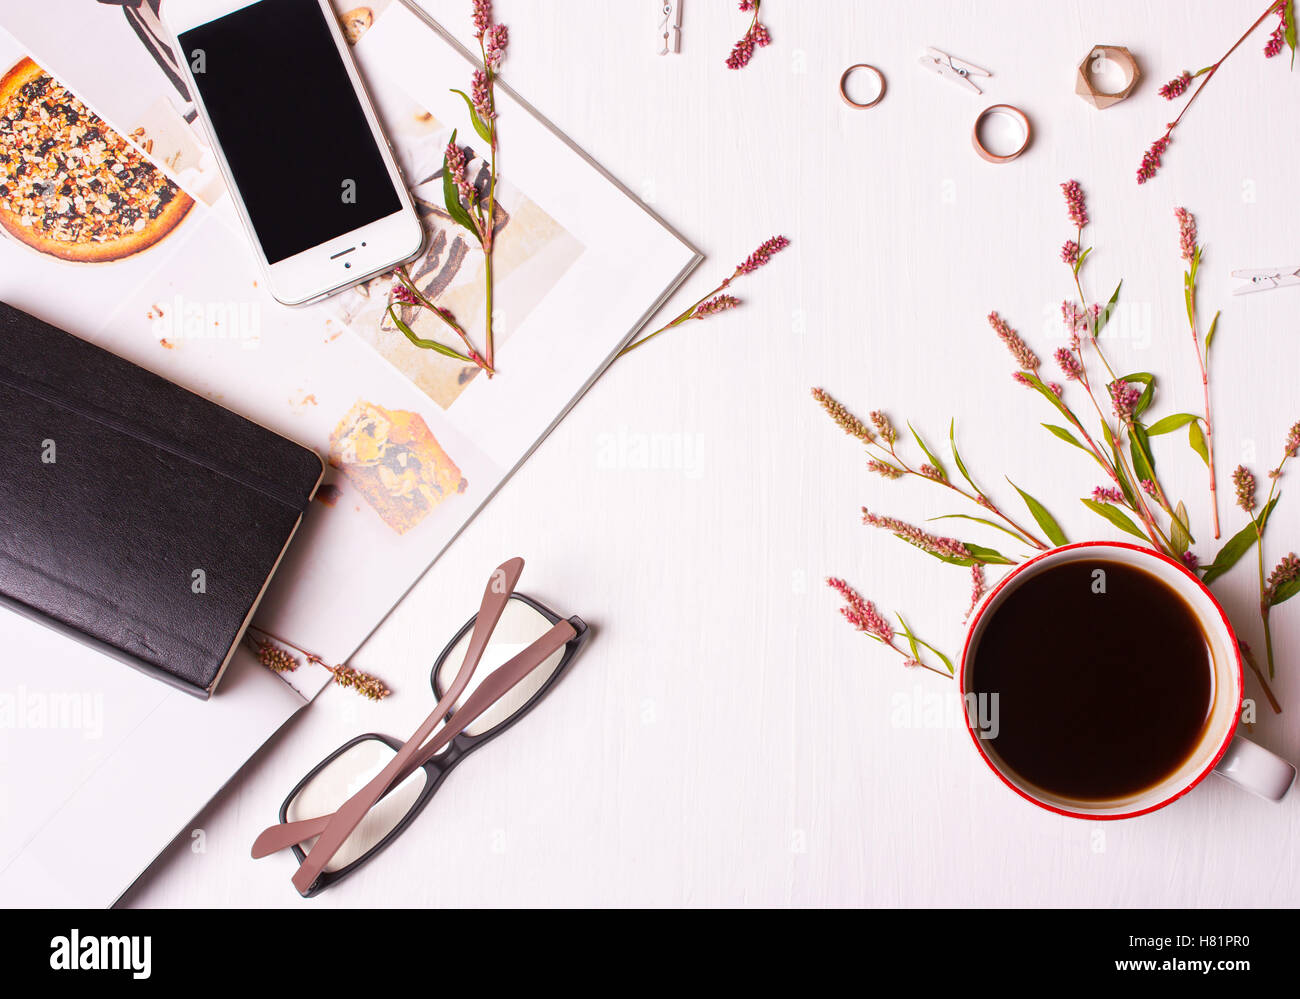 Vue de dessus de table de créateur, une femme avec une tasse de café, magasin, téléphone, lunettes, bagues, fleurs et un bloc-notes.L'espace de travail. Banque D'Images